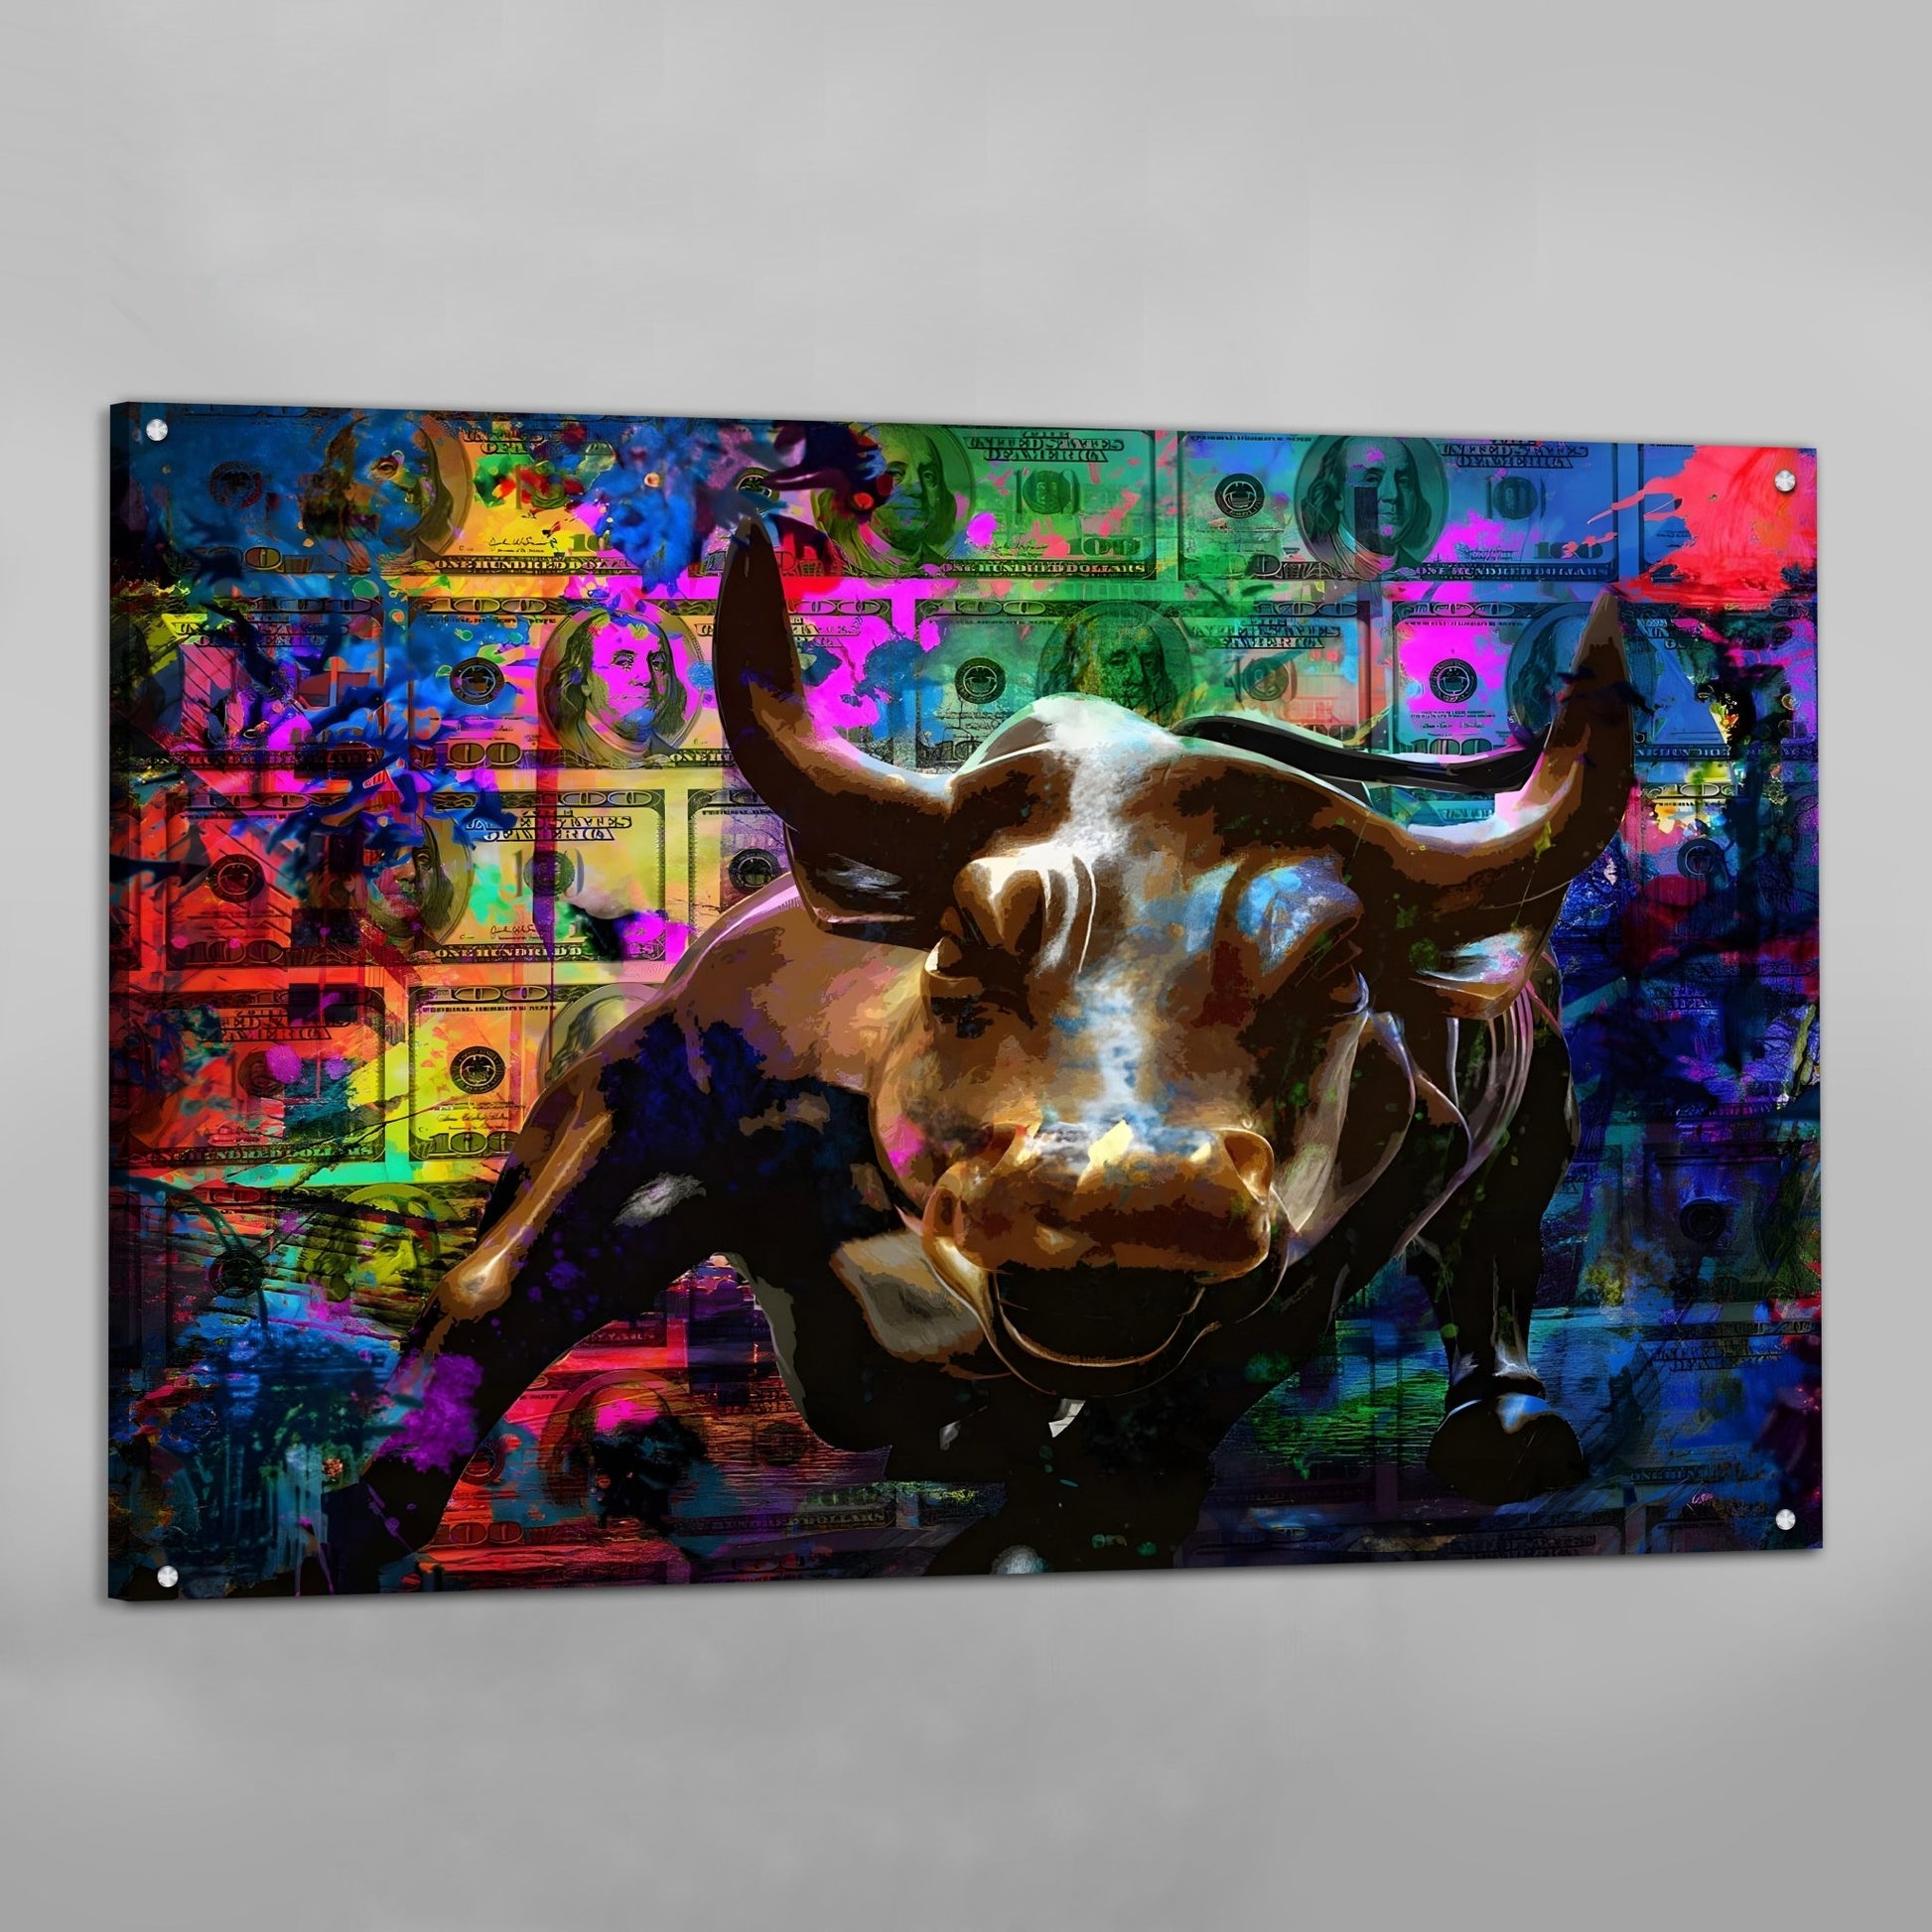 Wall Street Pop Art - Luxury Art Canvas